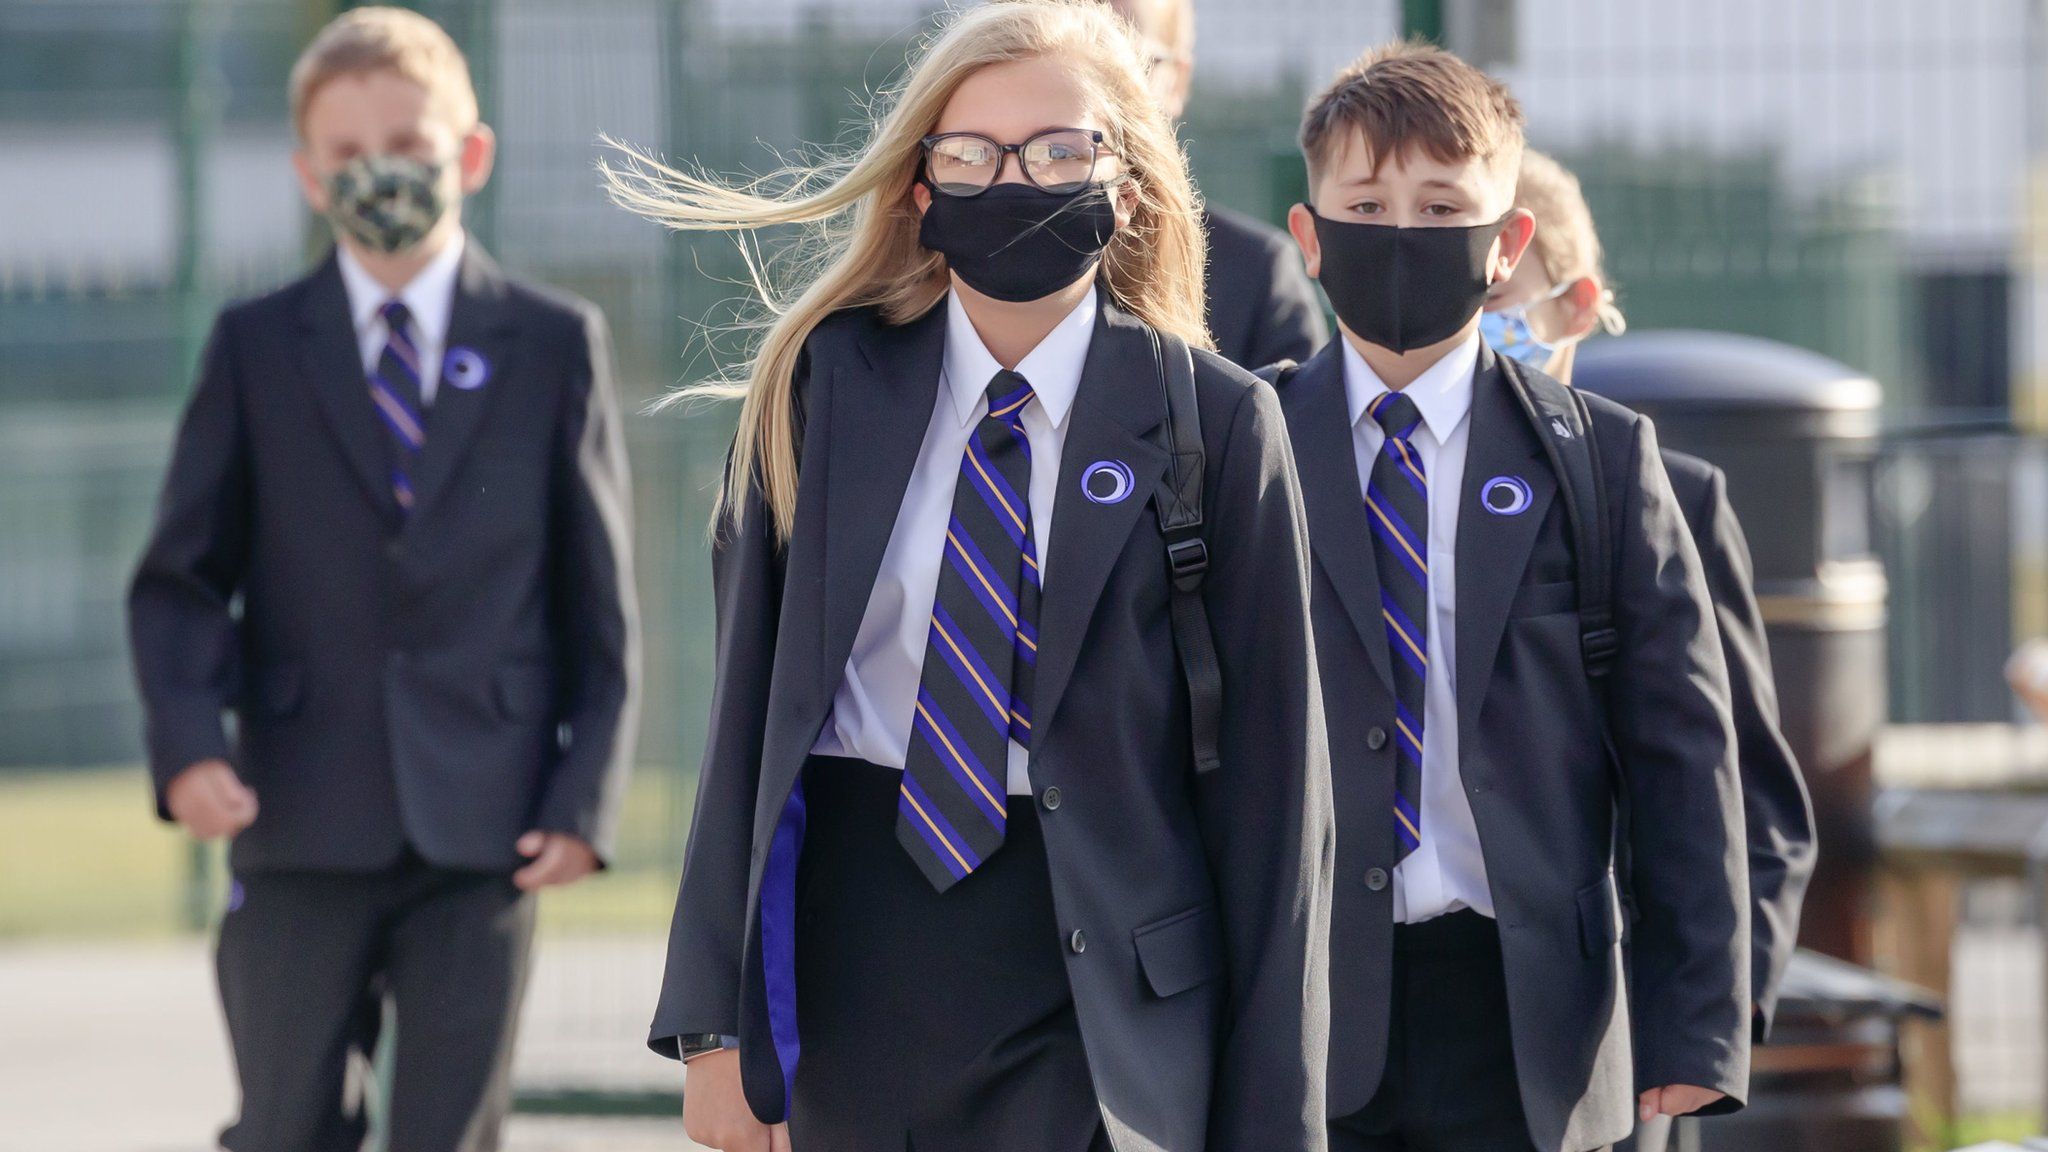 Pupils wearing masks in school